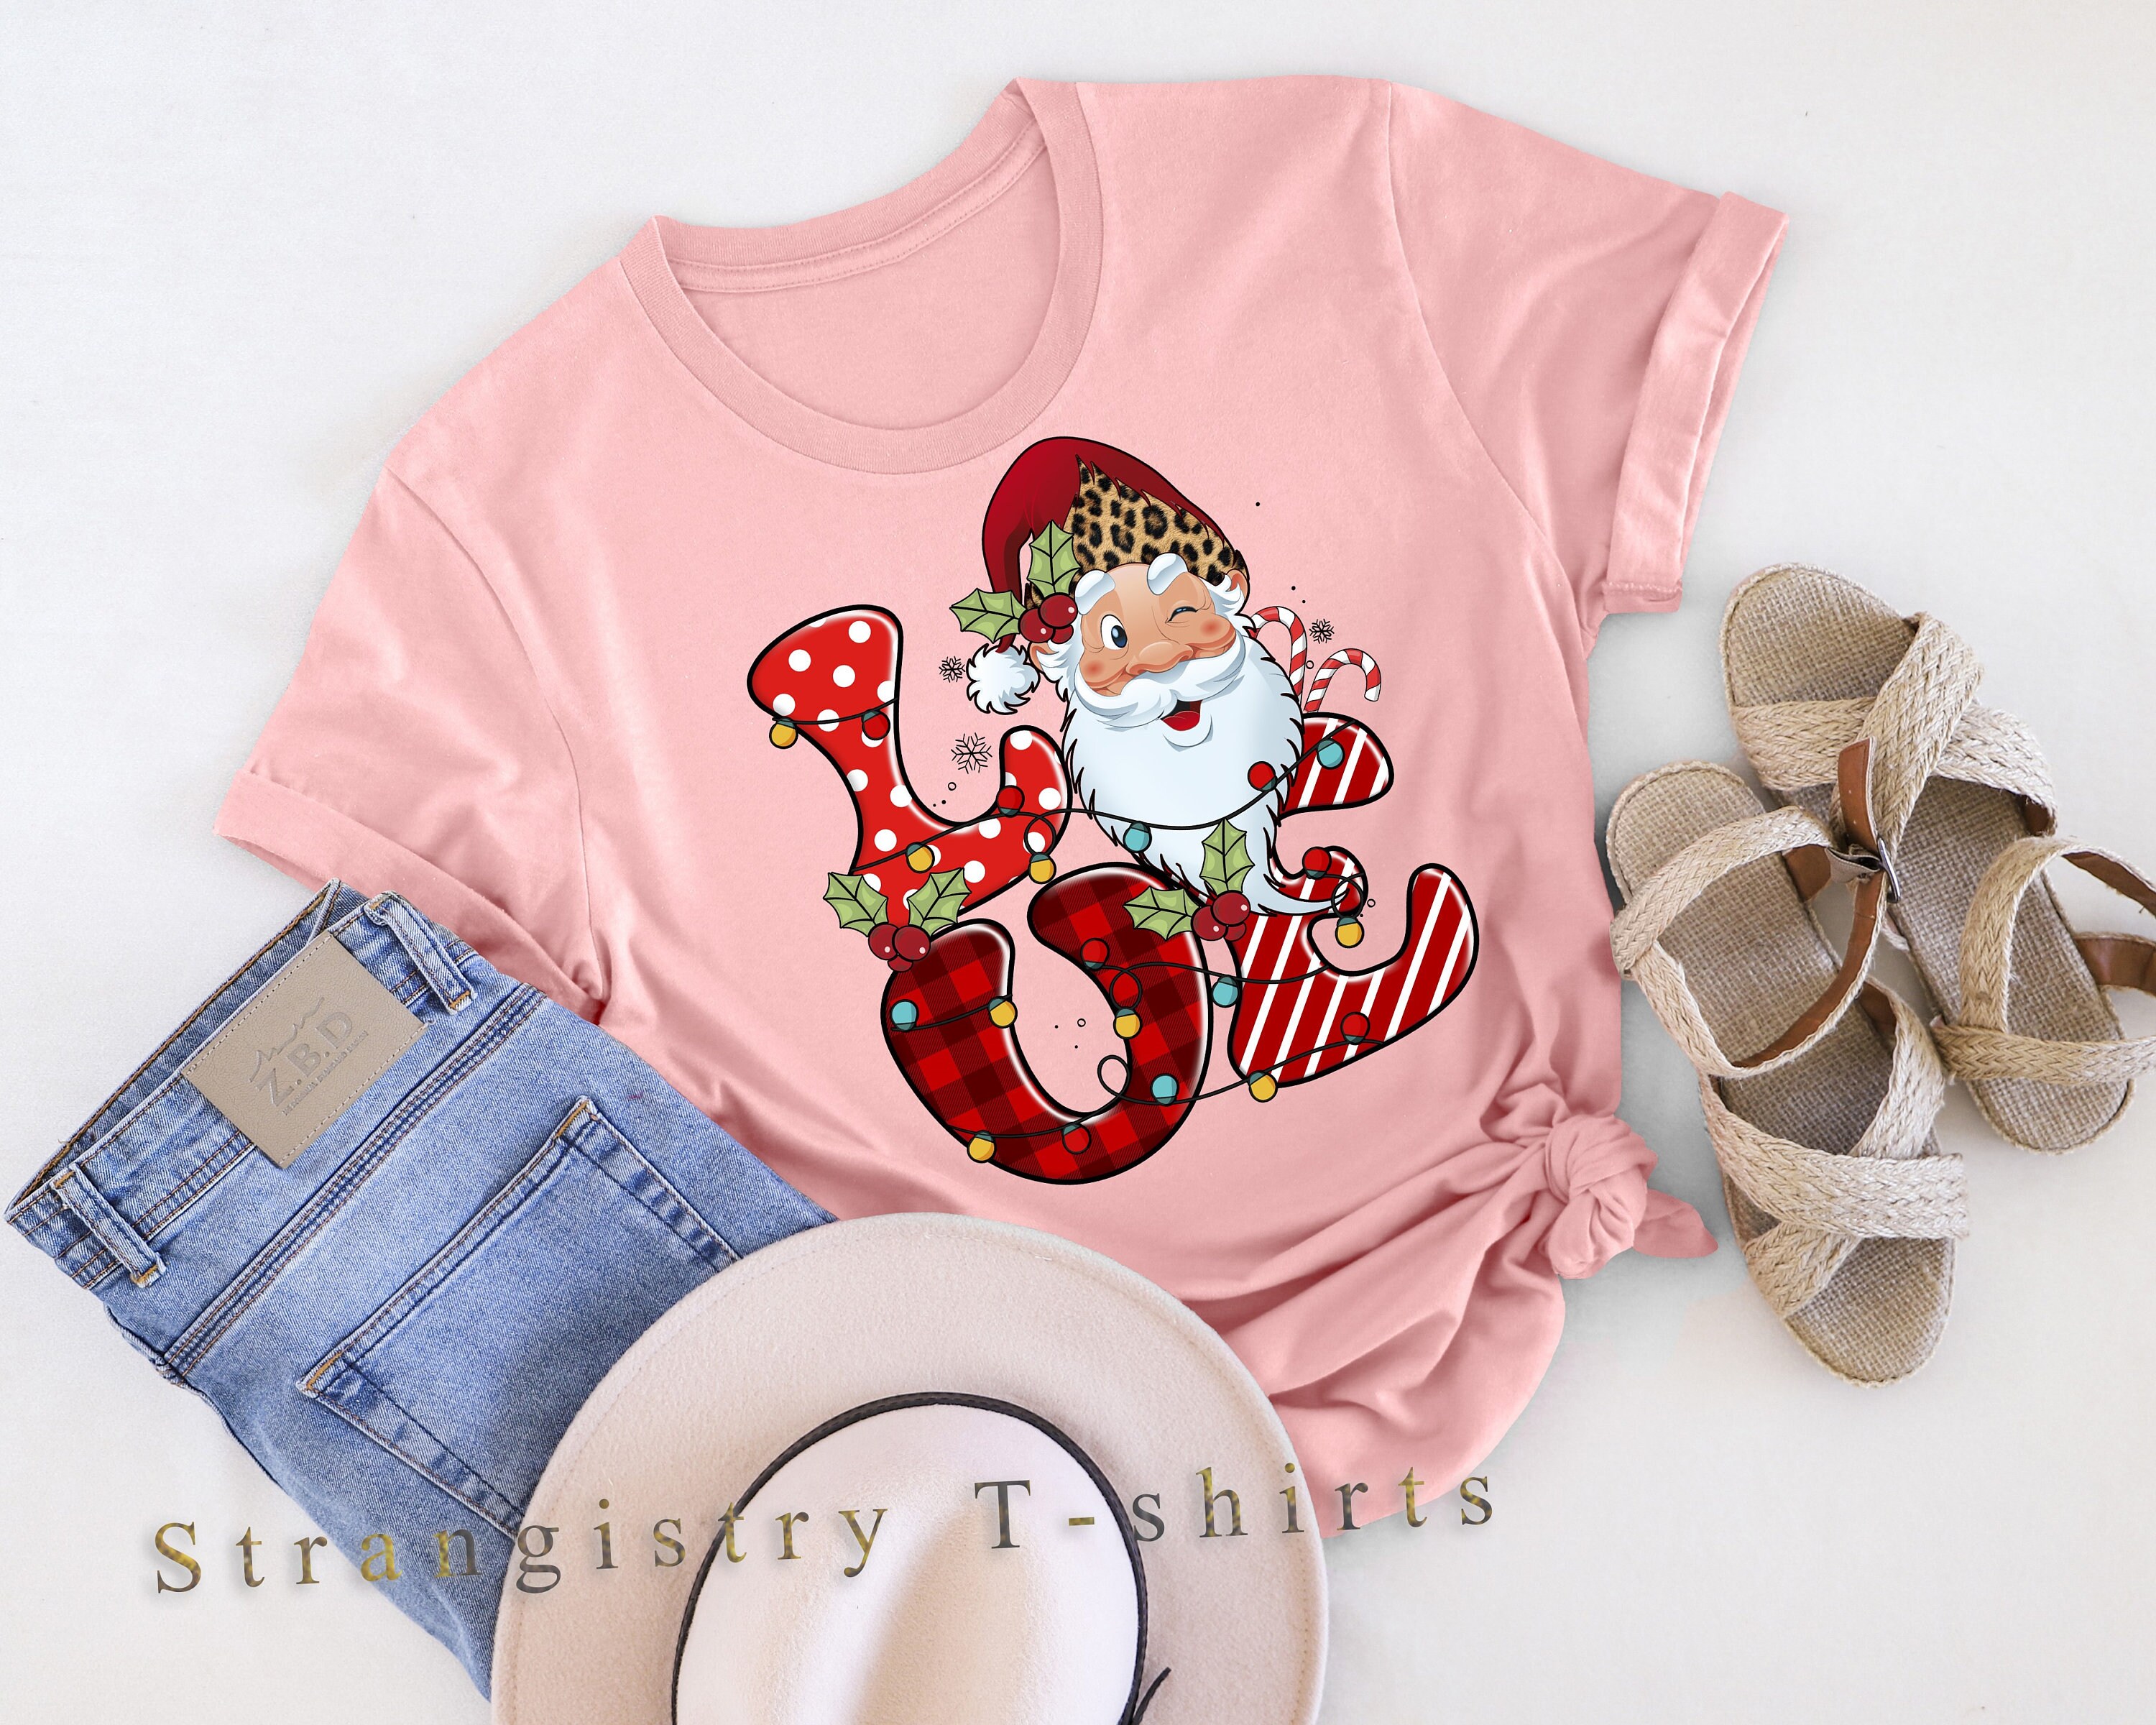 Christmas Shirt, Retro Christmas Shirt, Retro Love Christmas T-shirt, Santa Love T-shirt, Merry Christmas Shirt, Christmas Gift for Family